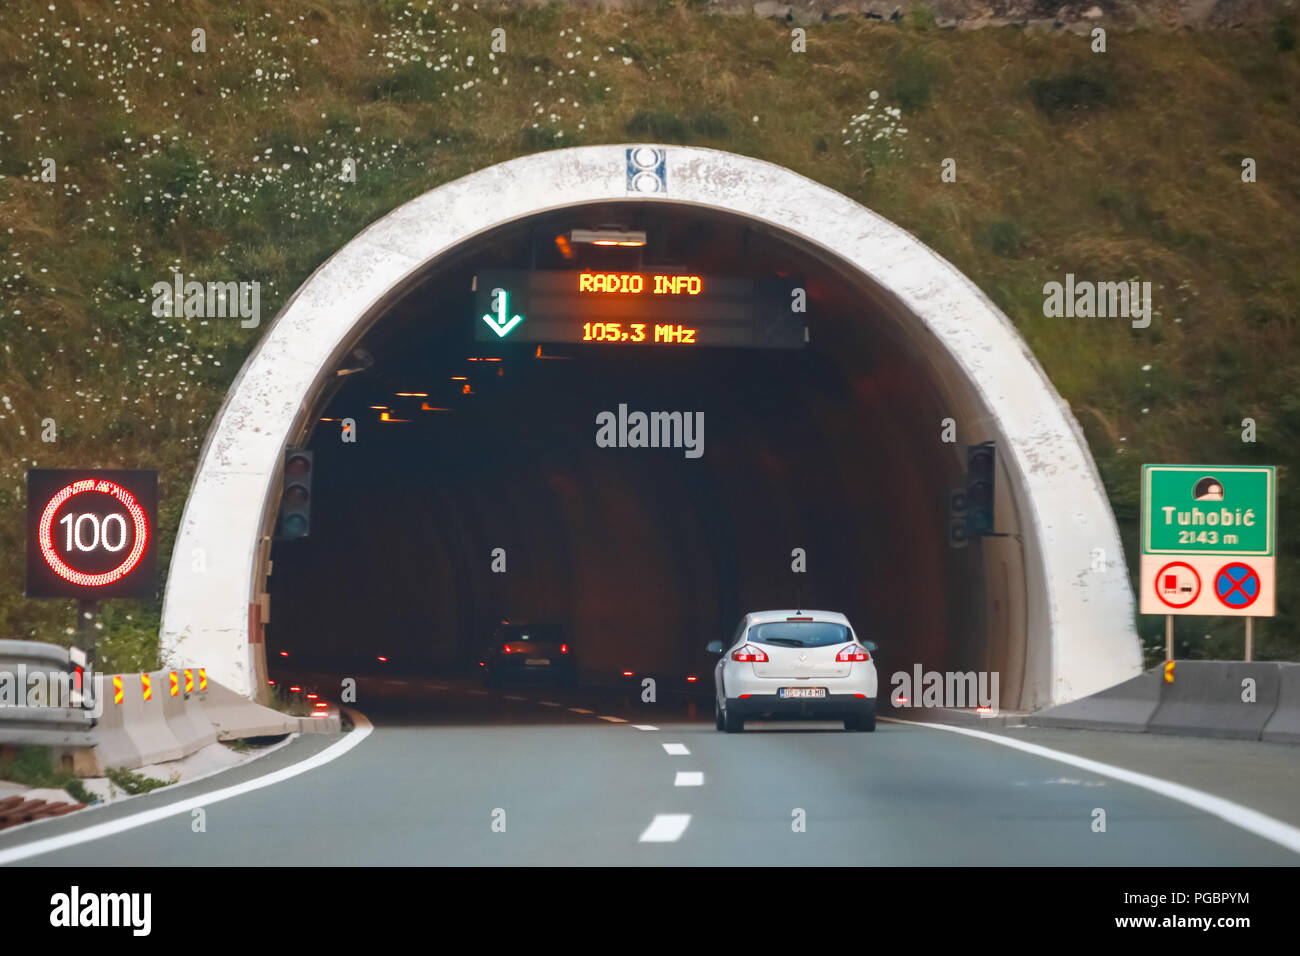 Tuhobic, Kroatien - August 1th, 2018: weißes Auto fahren in den tunnel Tuhobic mit Höchstgeschwindigkeit von 100 km/h im Tuhobic, Kroatien. Stockfoto